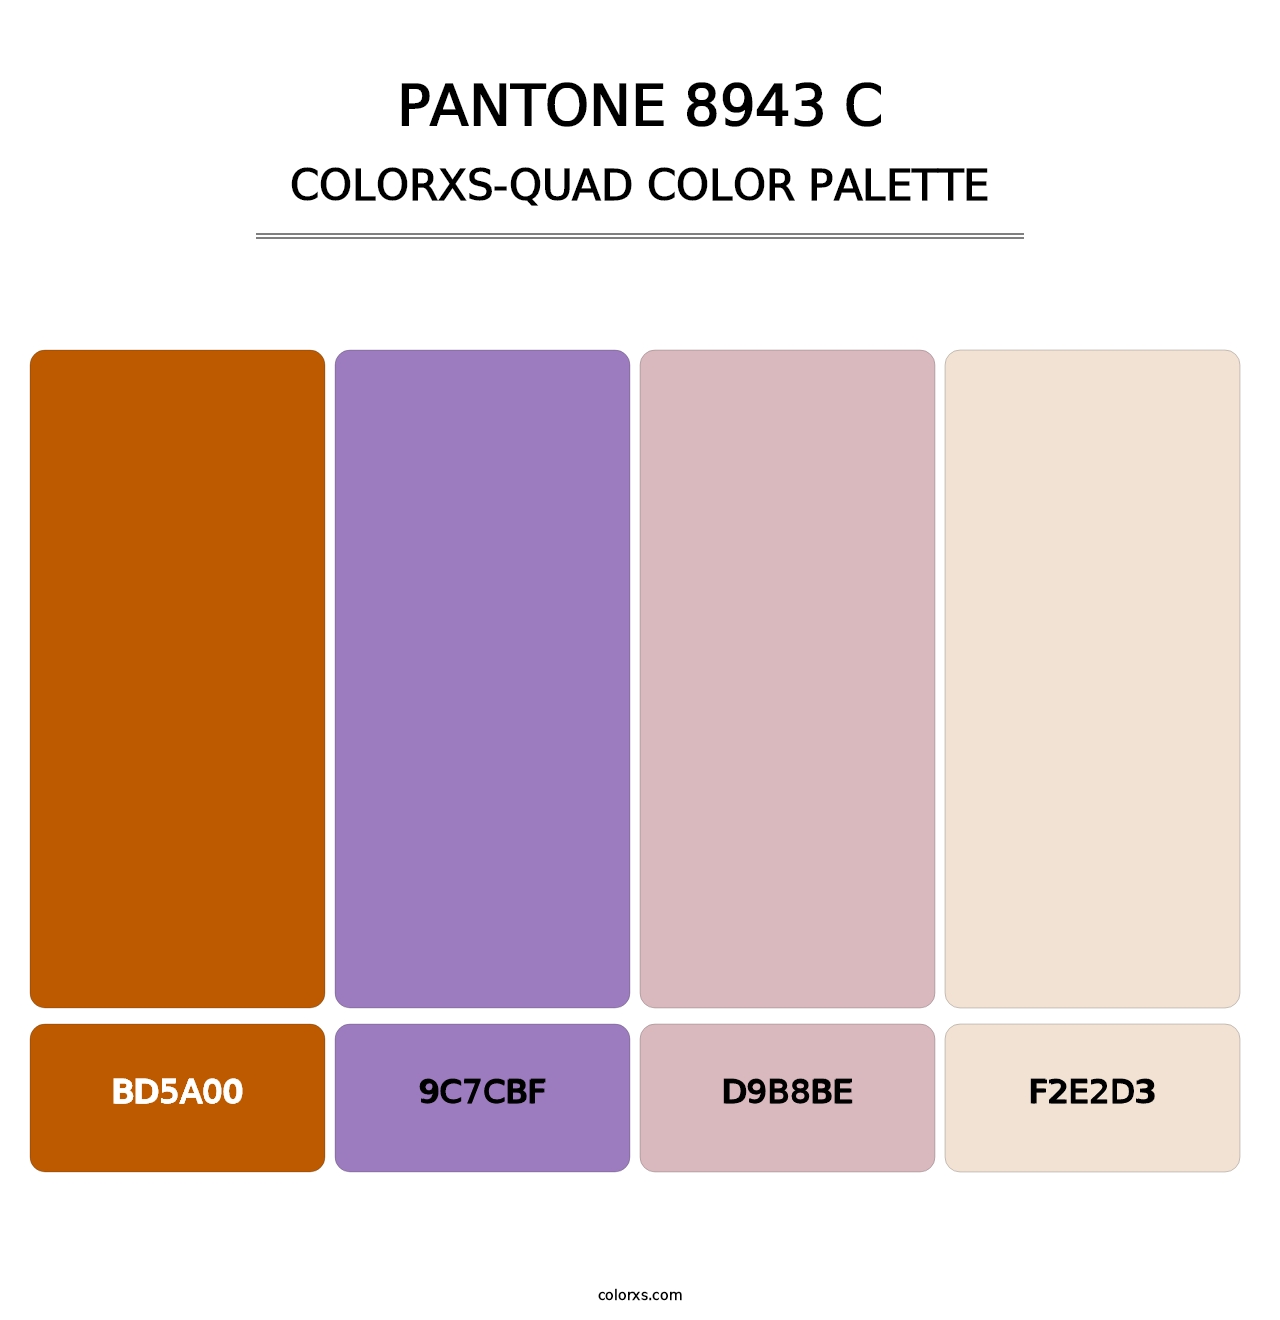 PANTONE 8943 C - Colorxs Quad Palette